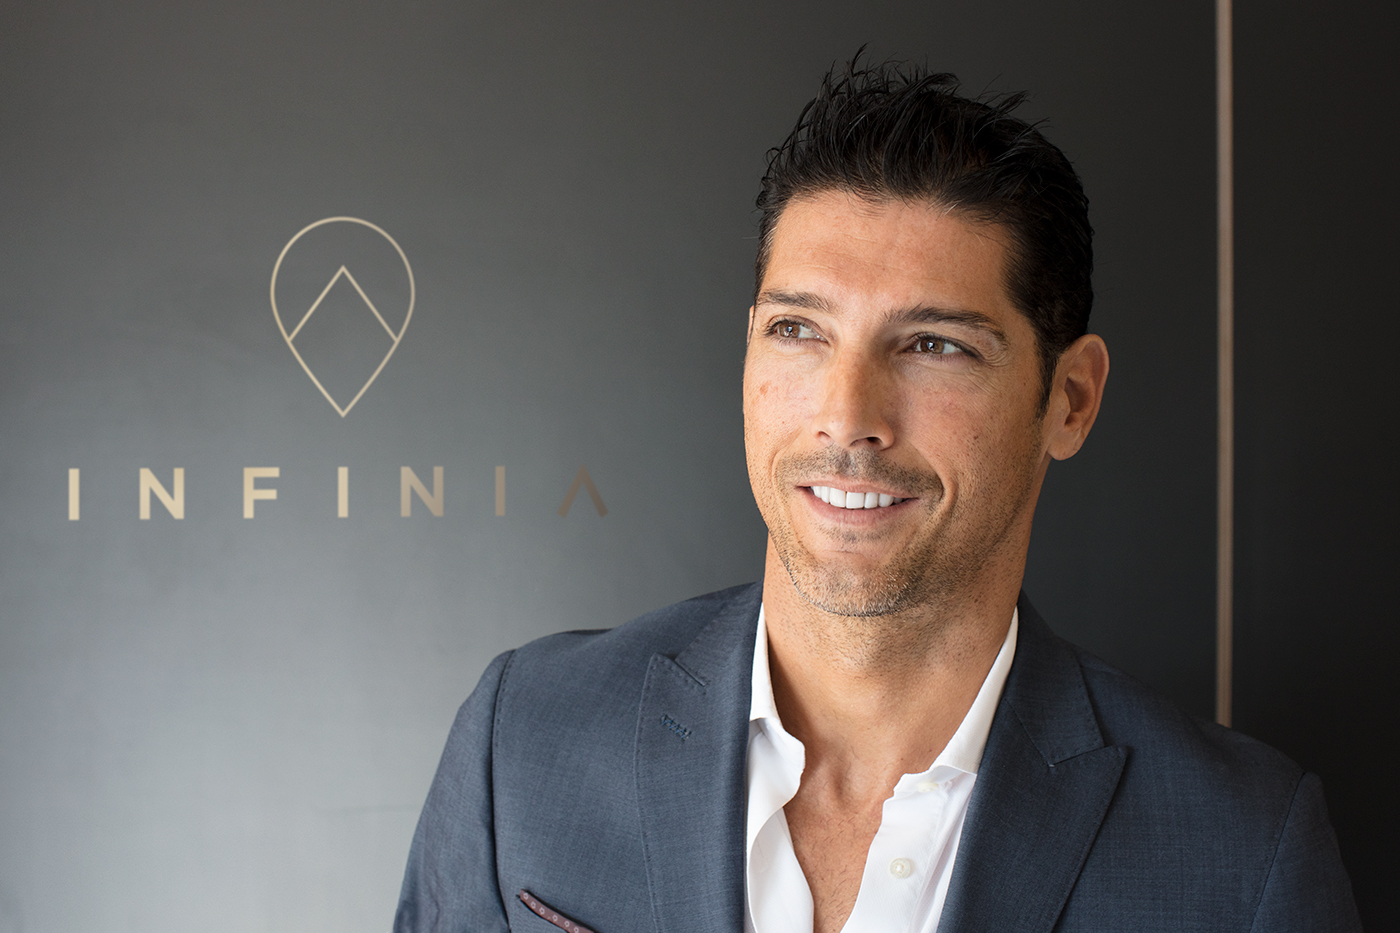 Entrevista a Fausto Fernández, Ceo & Founder de Infinia